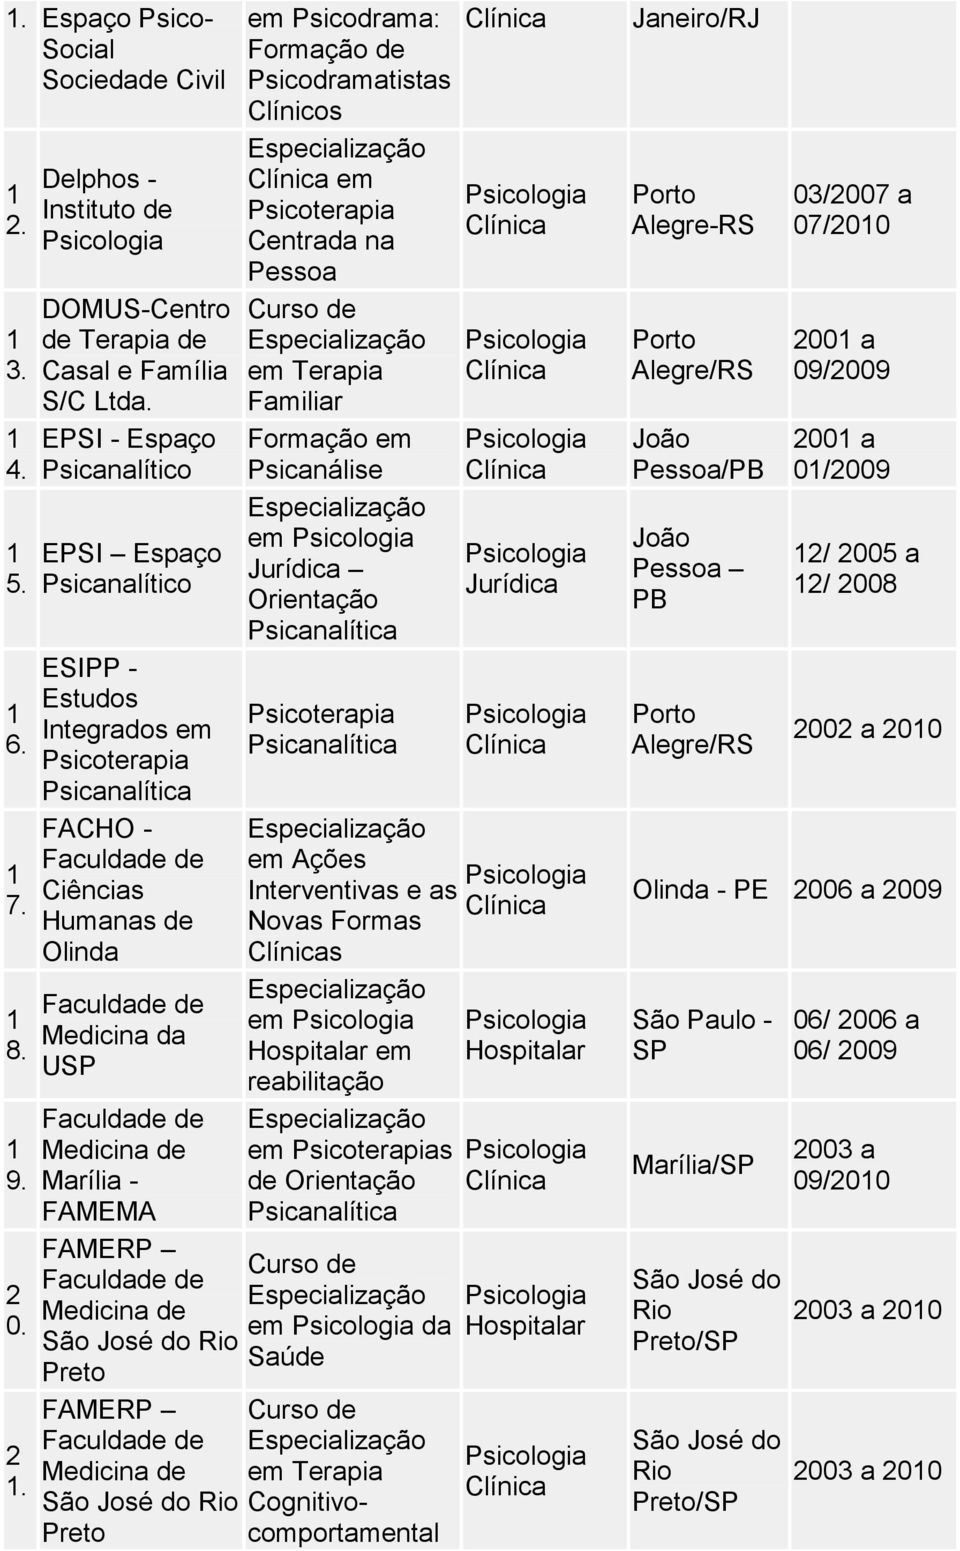 Rio Preto FAMERP Medicina de José do Rio Preto Psicodrama: Formação de Psicodramatistas Clínicos Centrada na Pessoa Terapia Familiar Psicanálise Jurídica Orientação Psicanalítica Psicanalítica